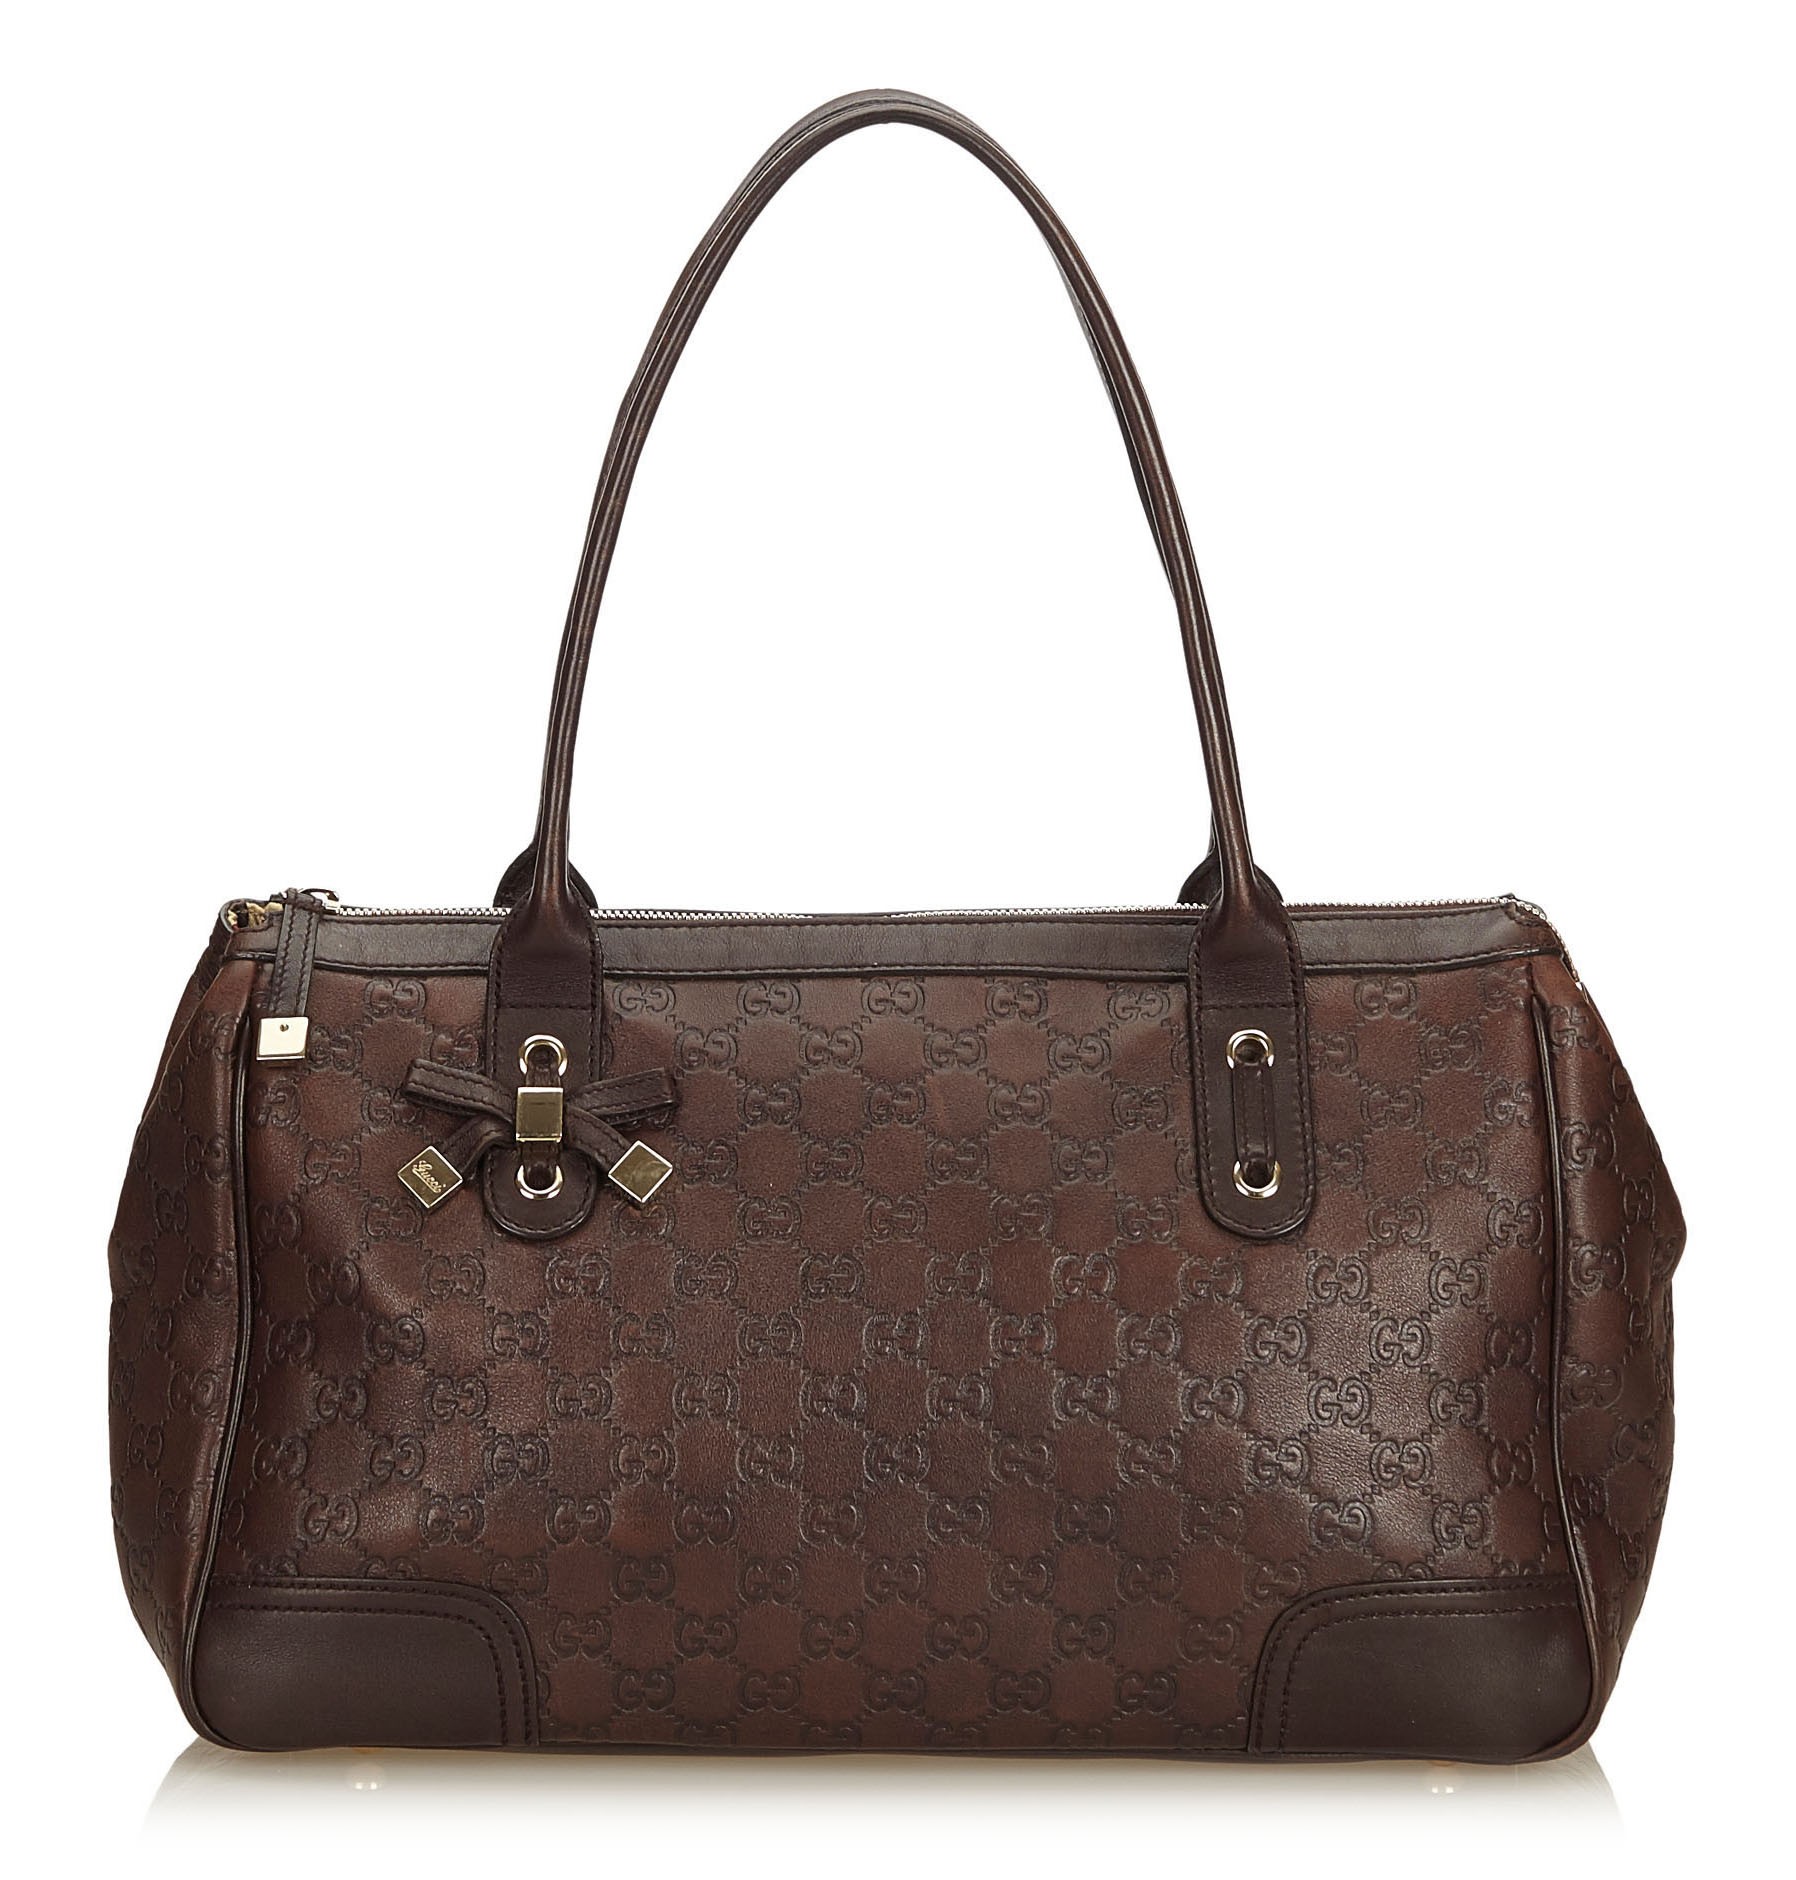 Guccissima Leather Princy Handbag Bag 